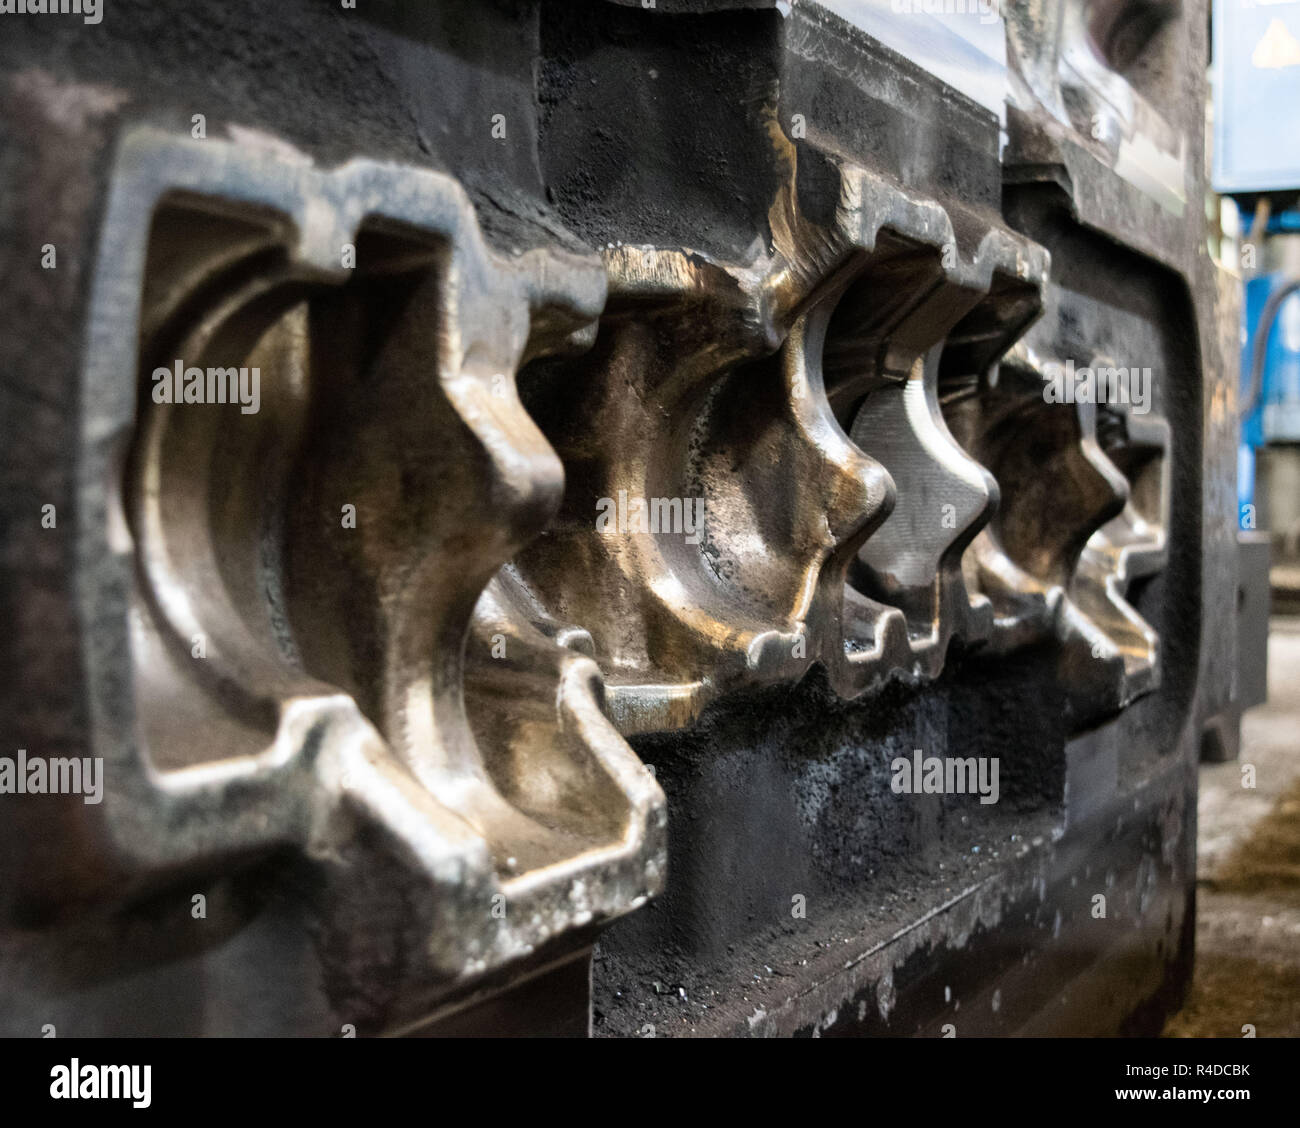 Hohe Präzision die Form für den Guss automotive Teile aus Aluminium machen  mit Eisen Metall Stahl durch die drehmaschine Fräsen Bohren und  CNC-Maschinen in der Industria Stockfotografie - Alamy